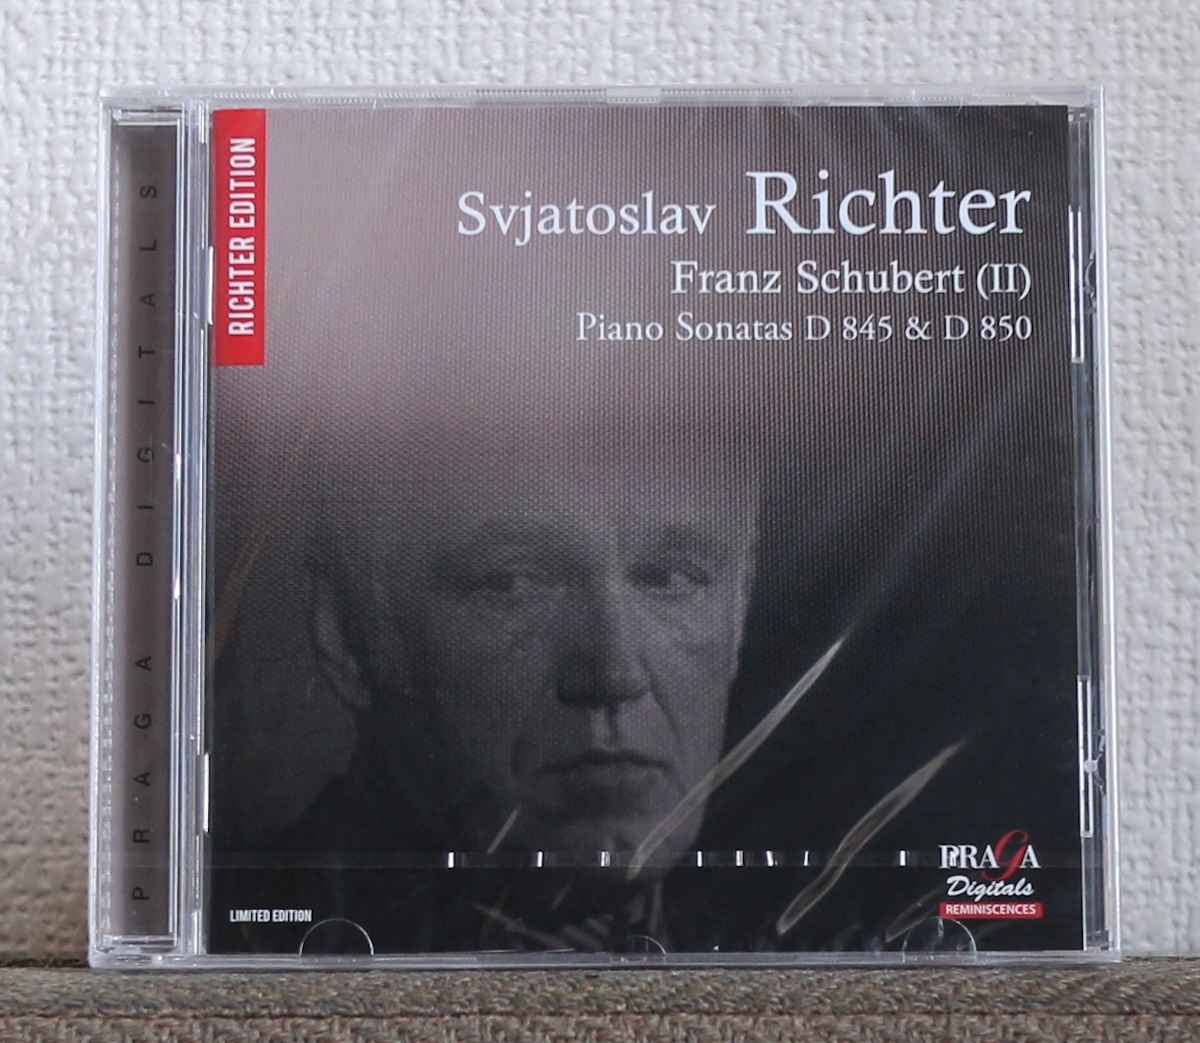 品薄/限定盤/CD/SACD/シューベルト/スヴャトスラフ・リヒテル/ピアノ・ソナタ第17番/16番/Schubert/Sviatoslav Richter/Piano/D 850/D 845の画像1